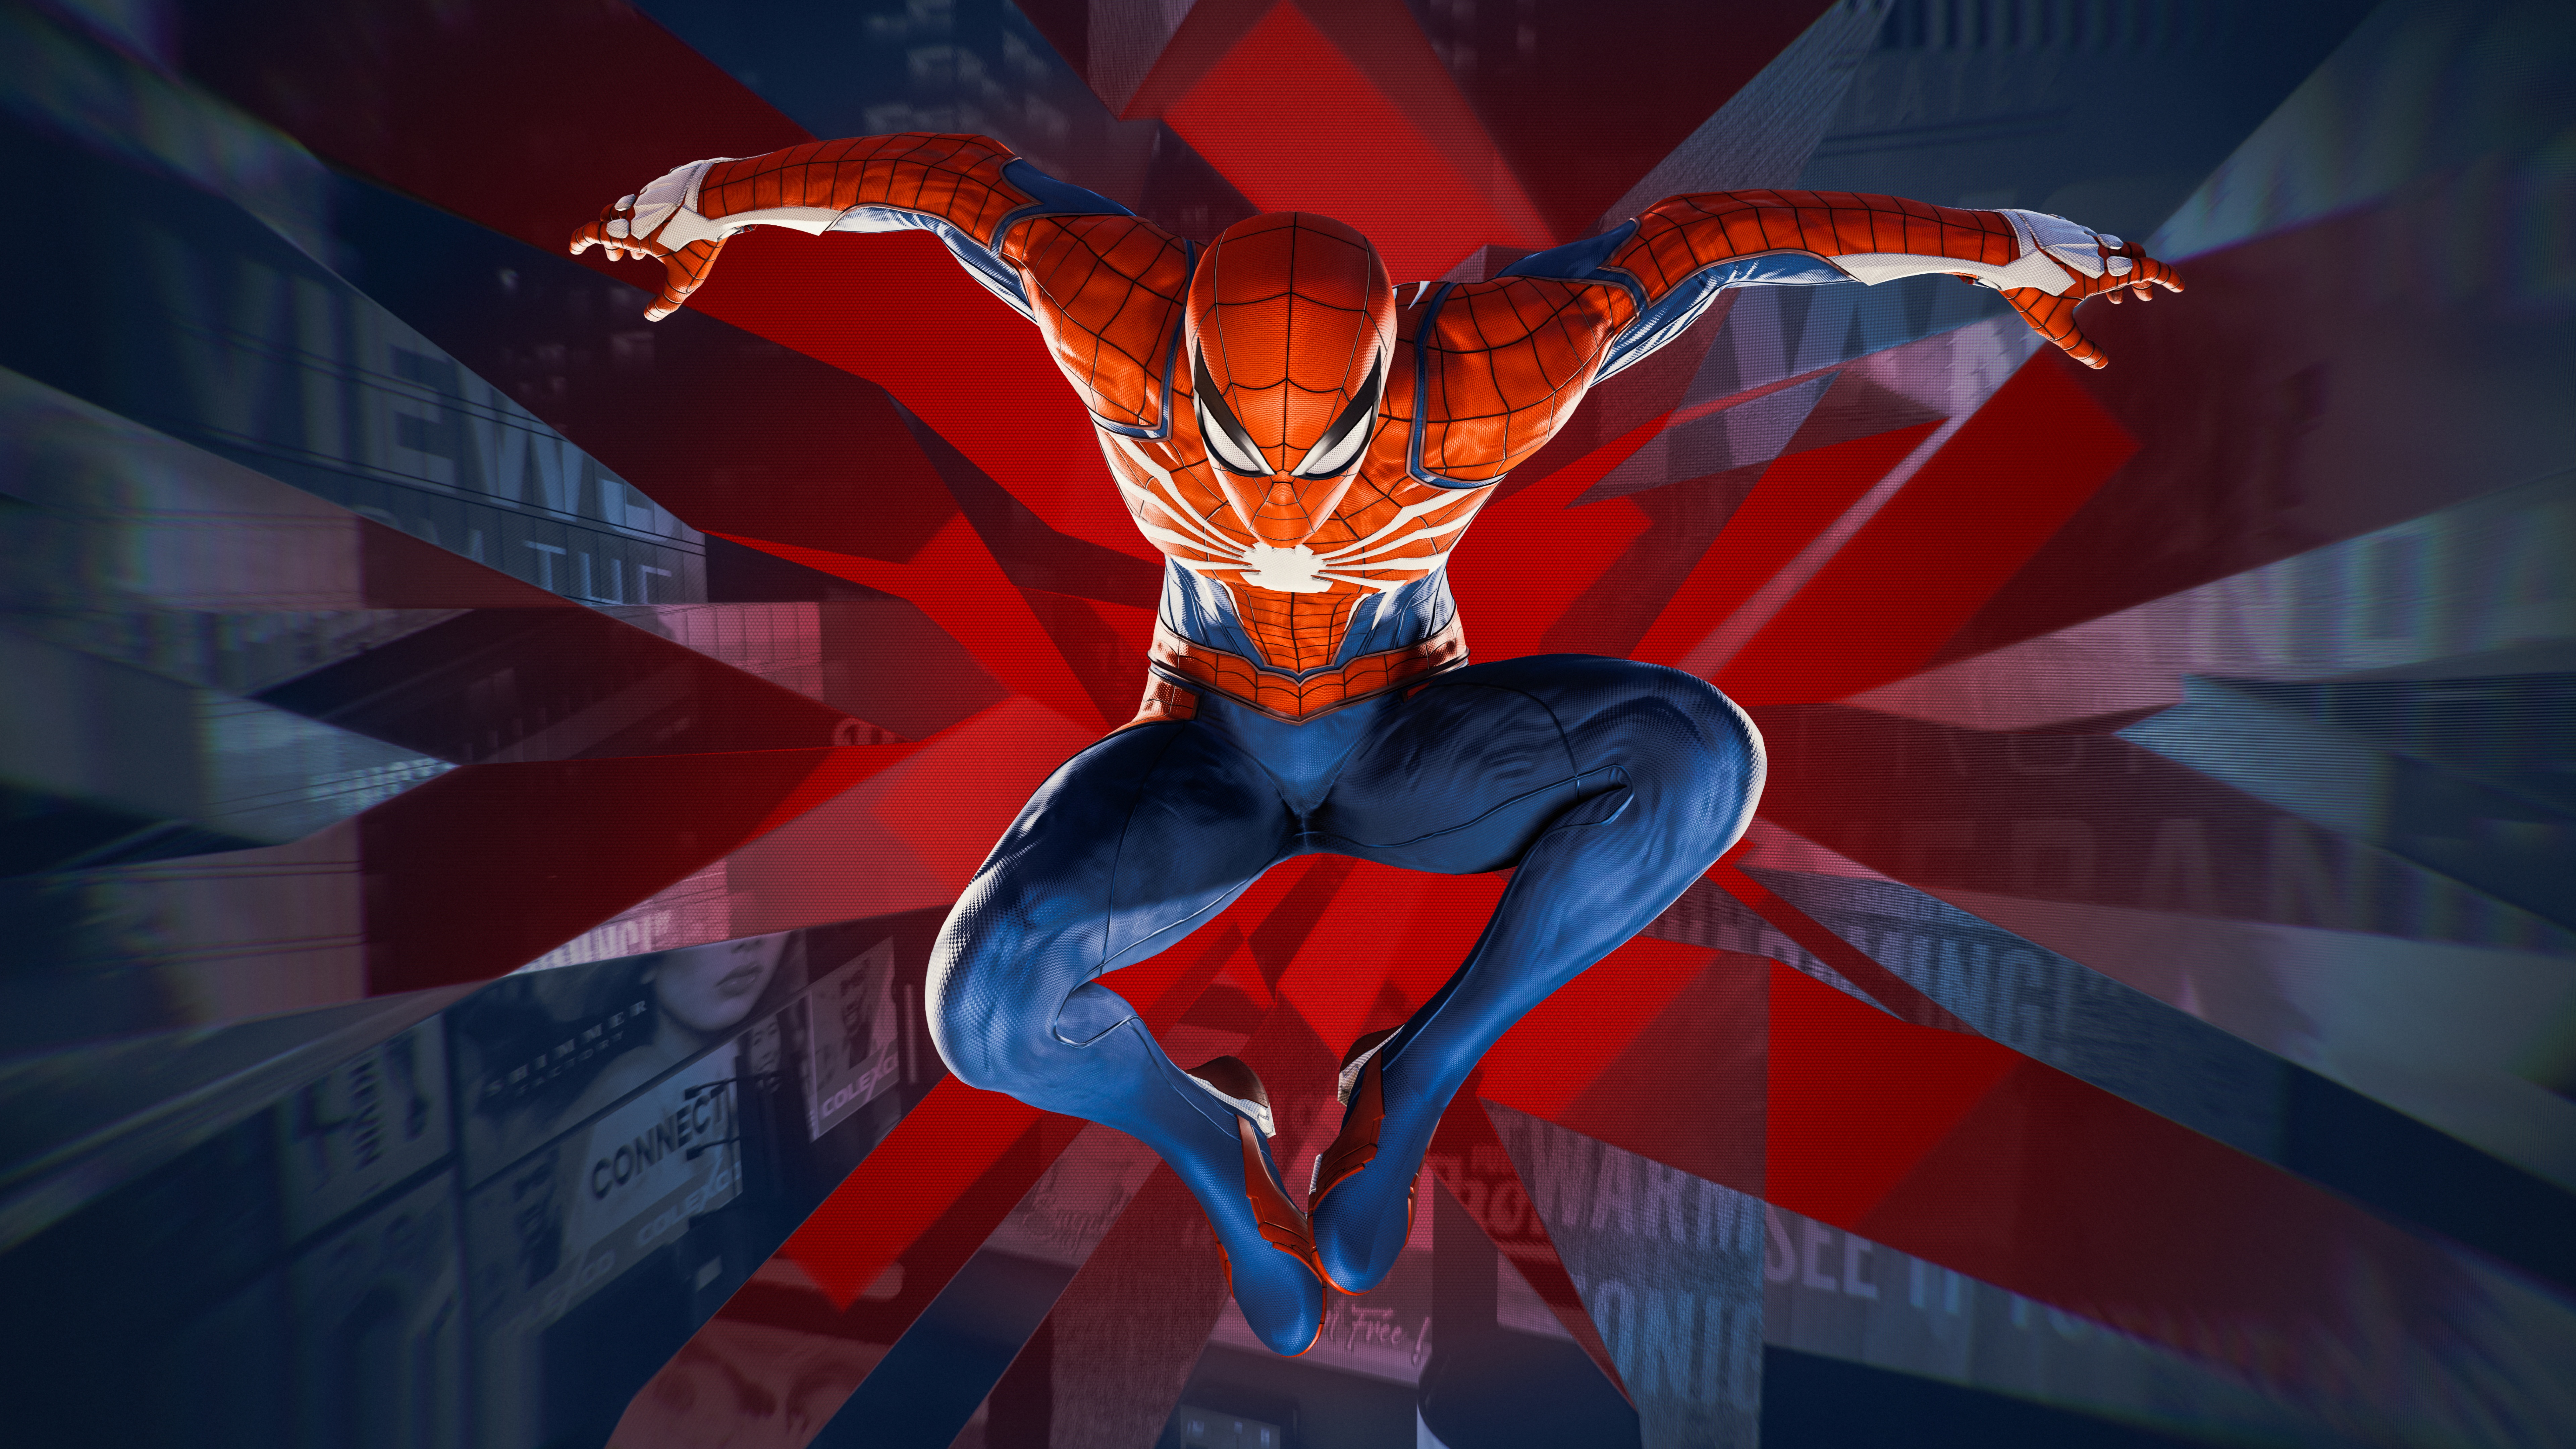 Hình nền Marvel\'s Spider-Man 4K mang đến cho bạn cảm giác hồi hộp, tuyệt vời nhất là khi chiếc váy đỏ của Spider-Man hiện lên trong ánh sáng đèn đường nháy mắt lấp lánh. Với sự phong phú của màu sắc và độ phân giải cao, bạn sẽ có trải nghiệm tuyệt vời khi sử dụng hình nền này.